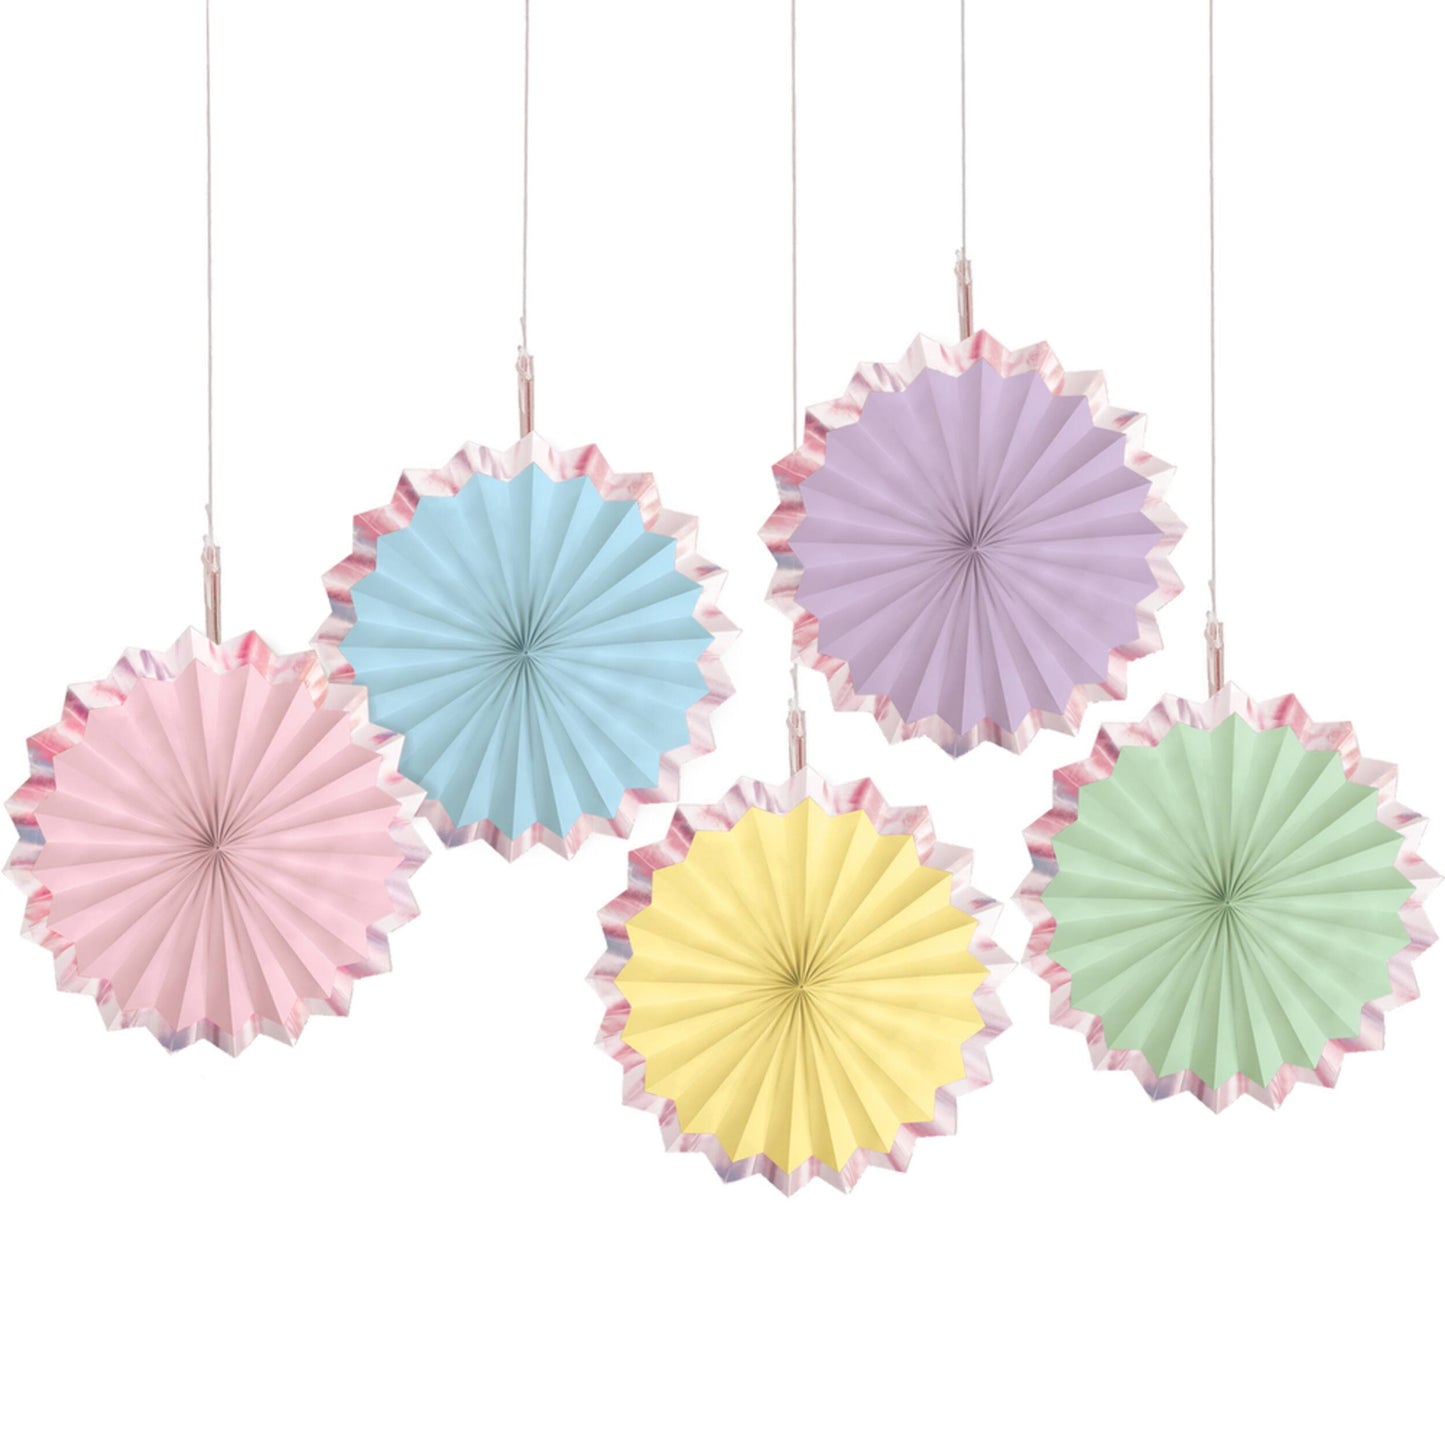 Mini kit de decoración de abanicos en colores pastel